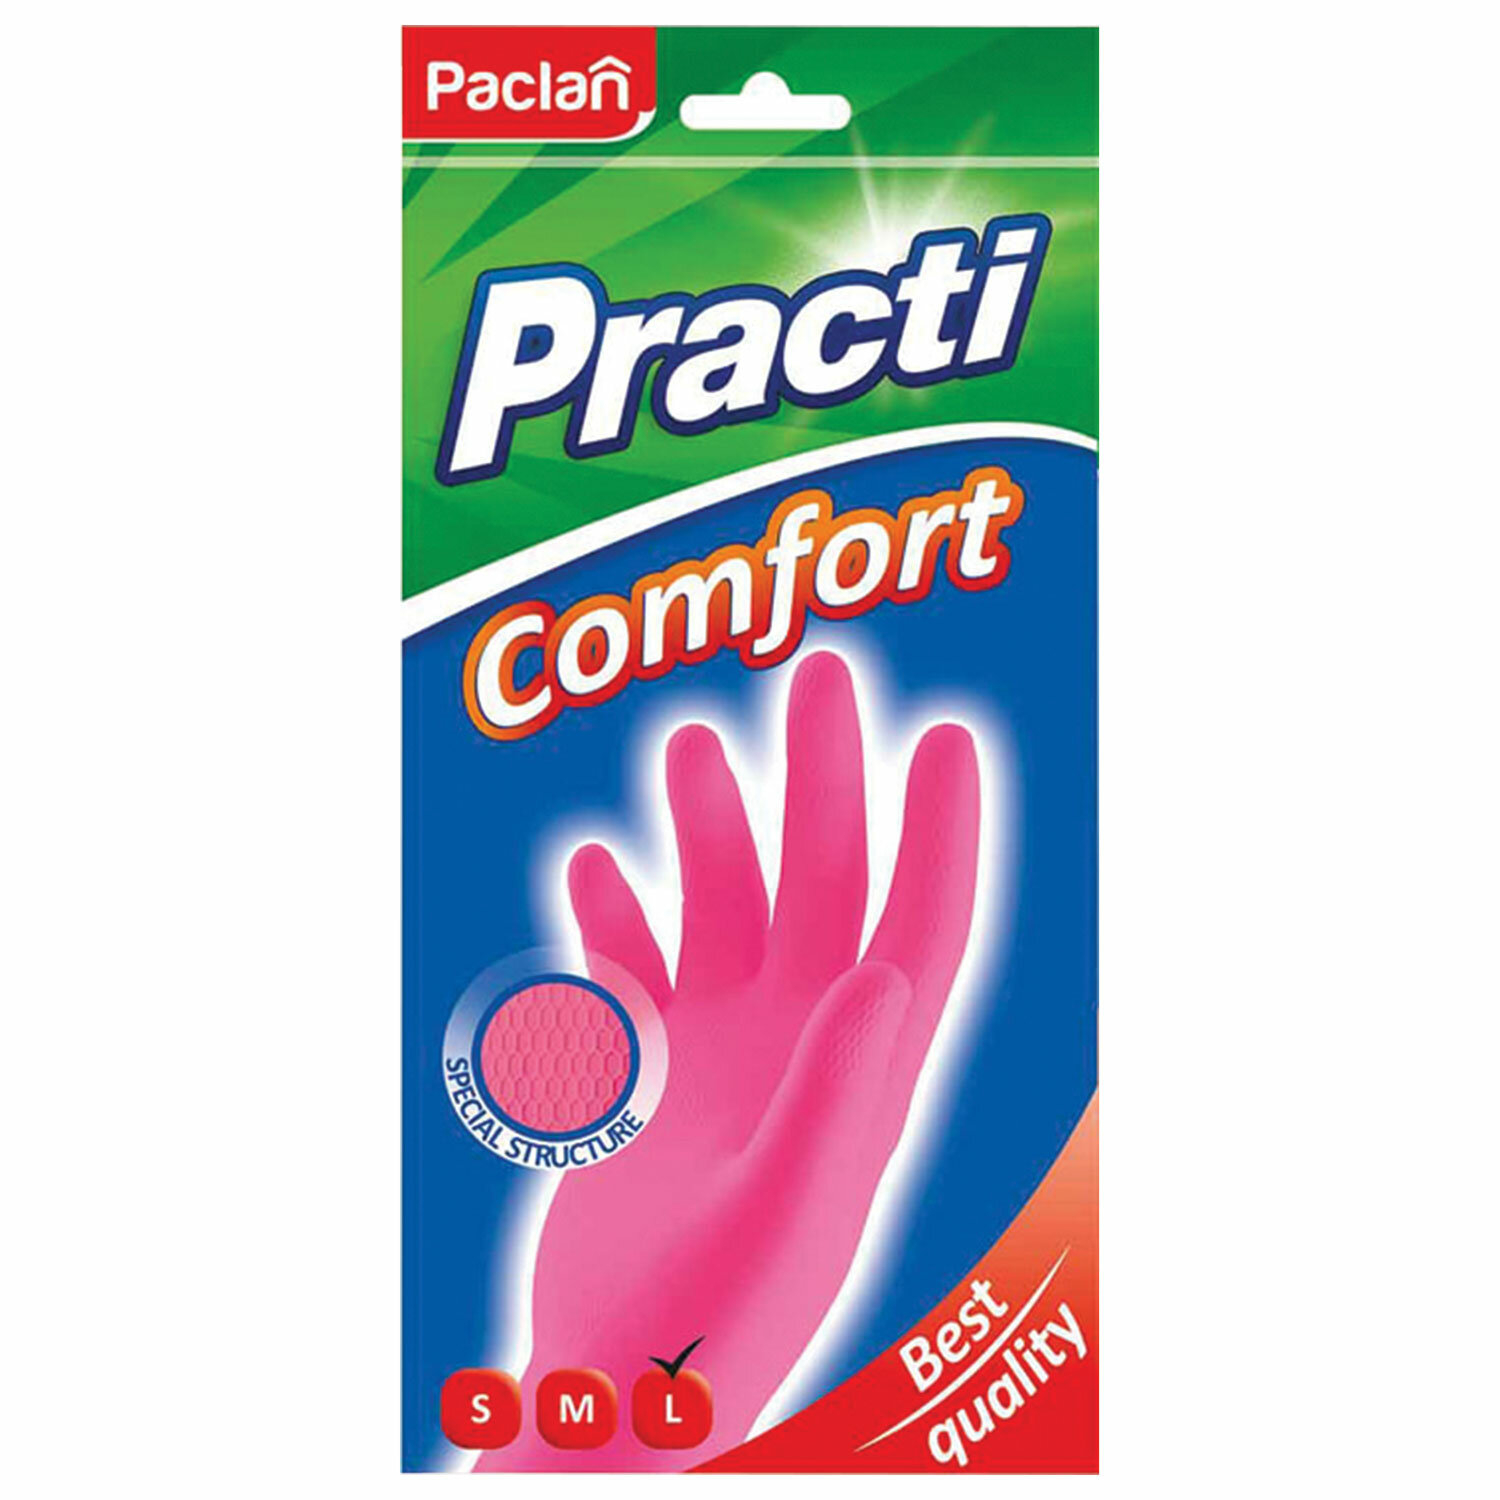 Перчатки резиновые Paclan extra dry размер L 1 пара в ассортименте перчатки резиновые paclan extra dry